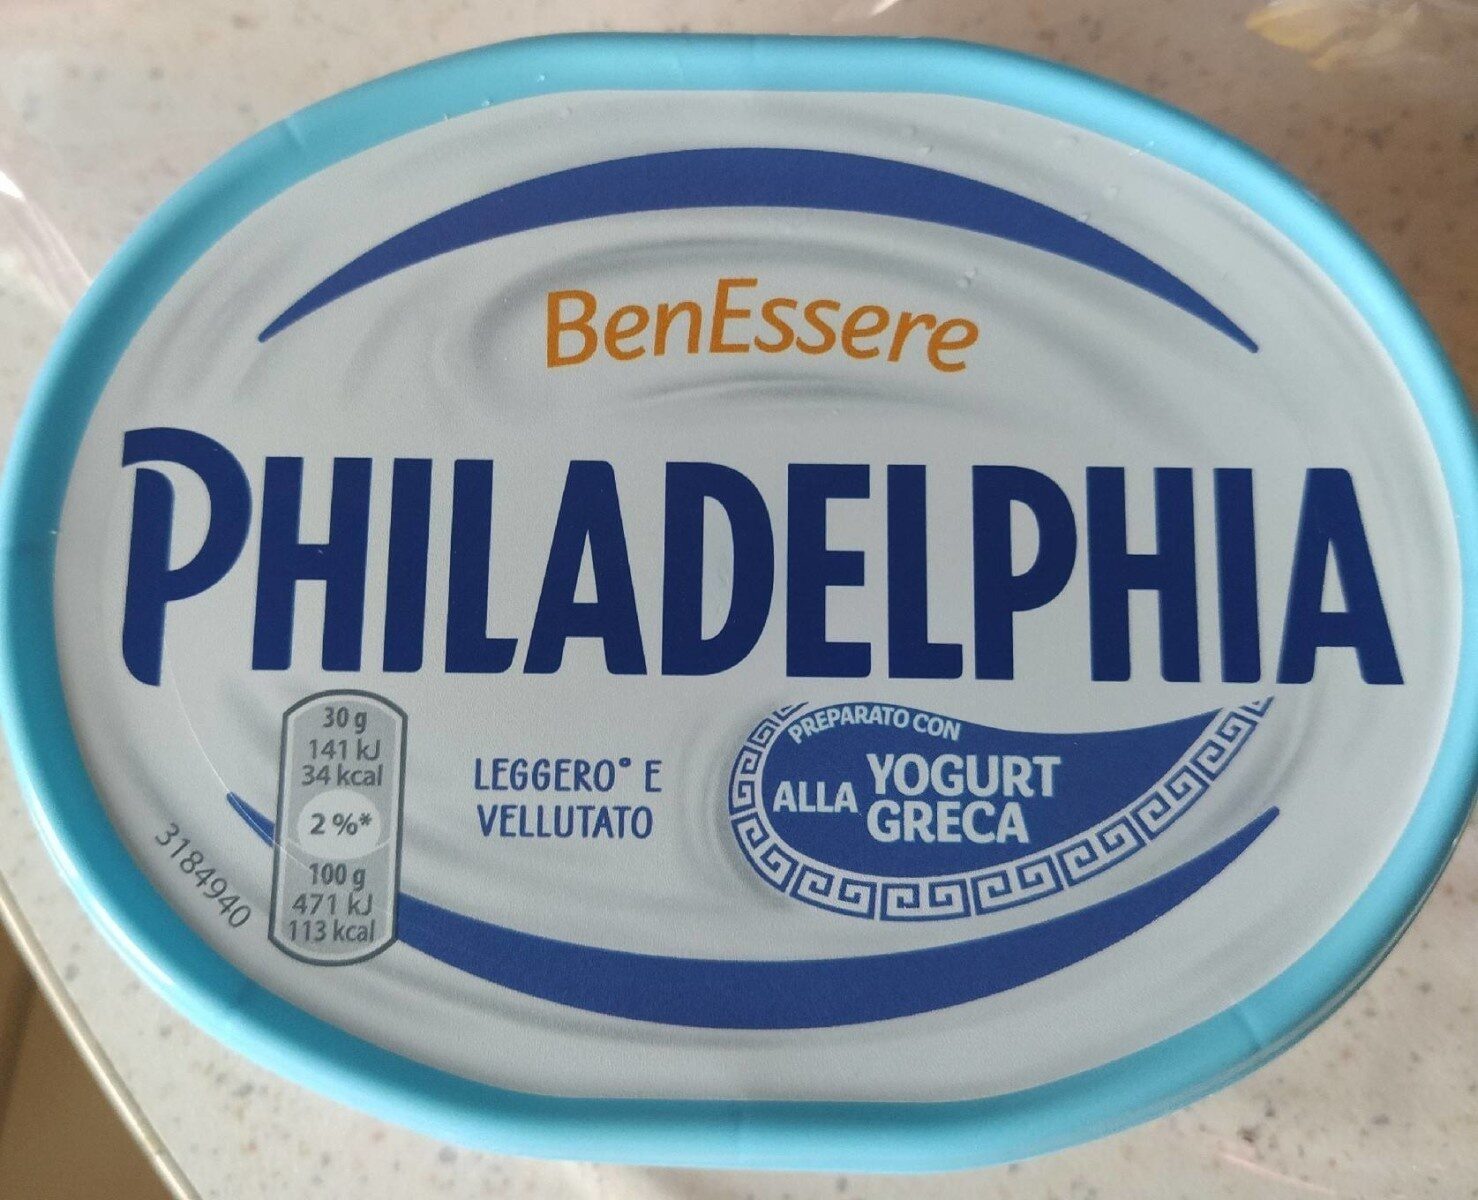 Philadelphia yogurt alla greca - Prodotto